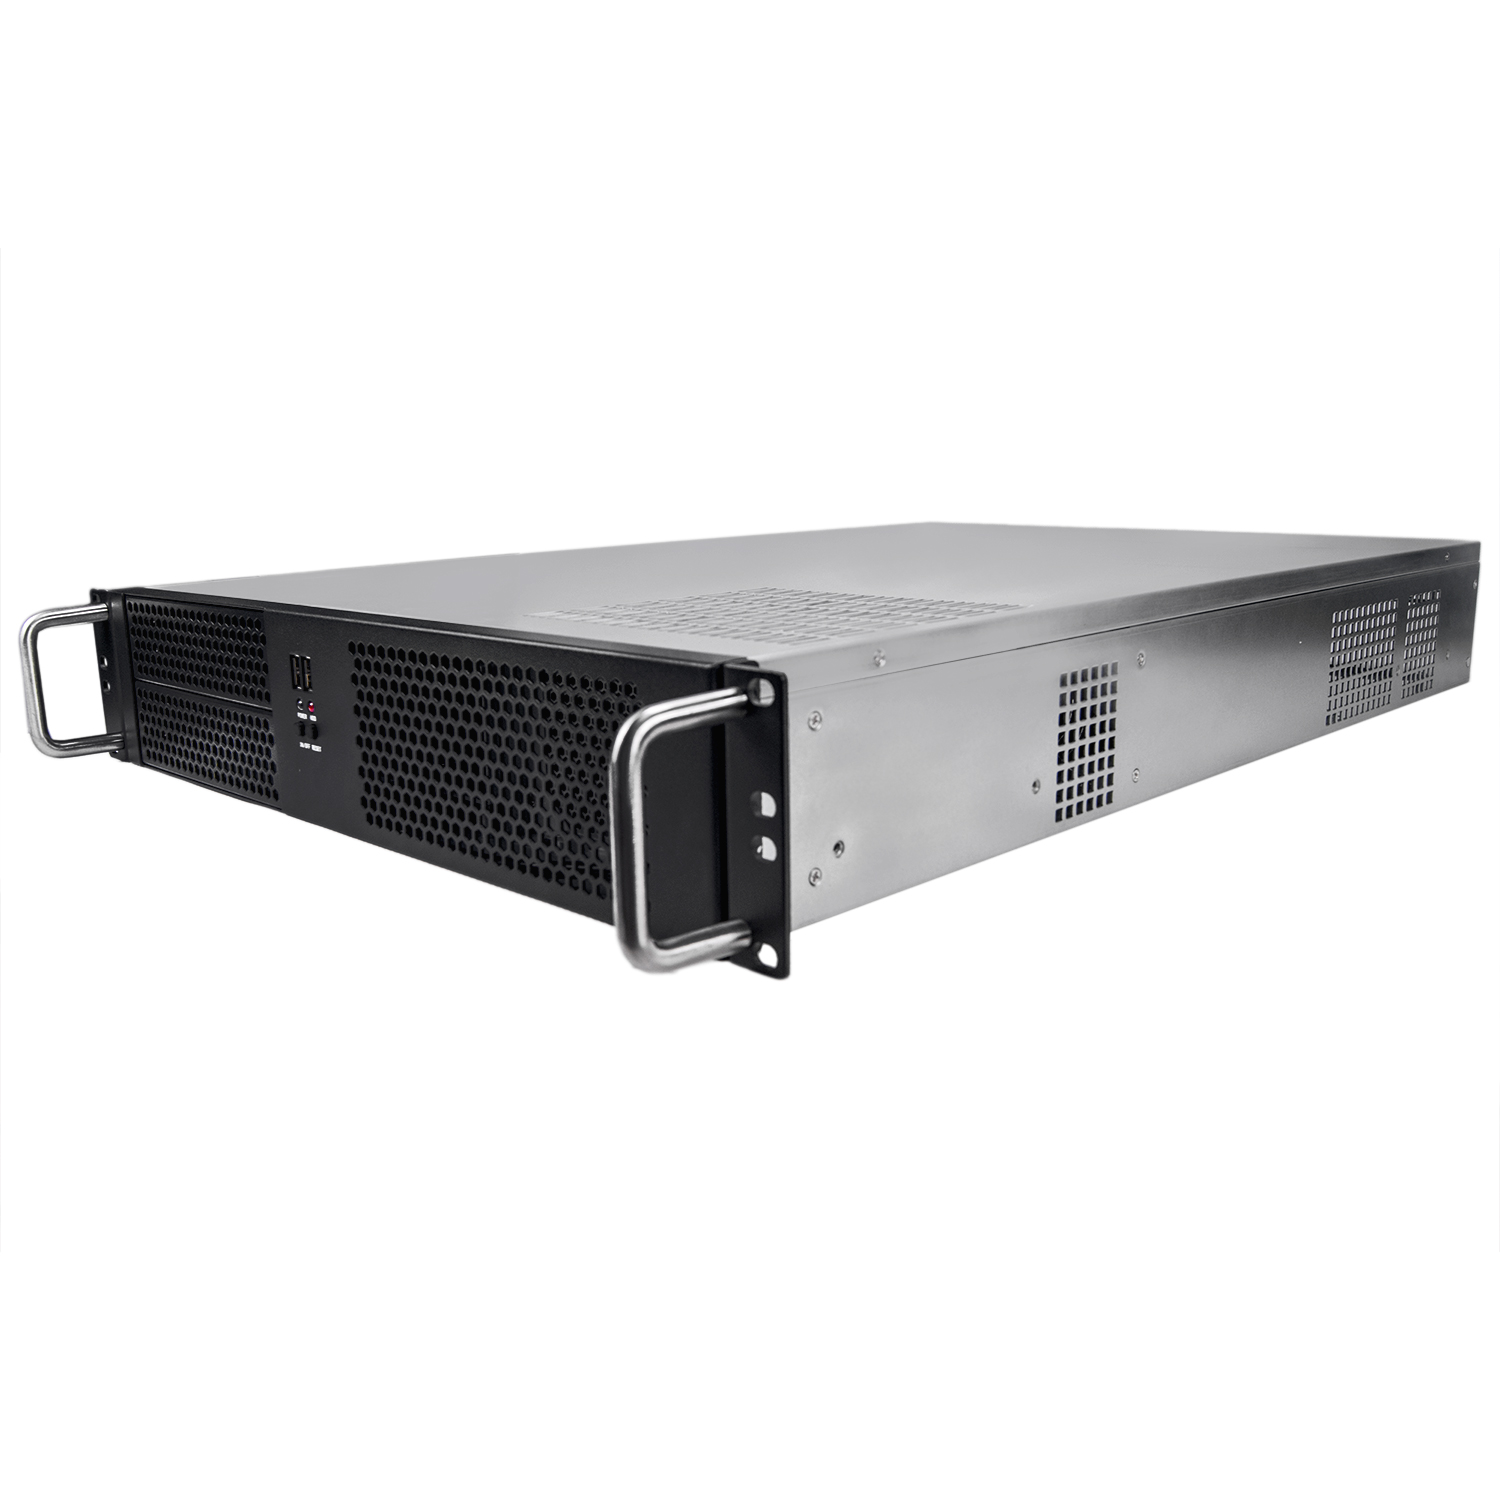 Серверный корпус 2U NR-N2066 500Вт (EATX 12x13, 2x5.25ext, 9x3.5int, 660mm) черный, NegoRack